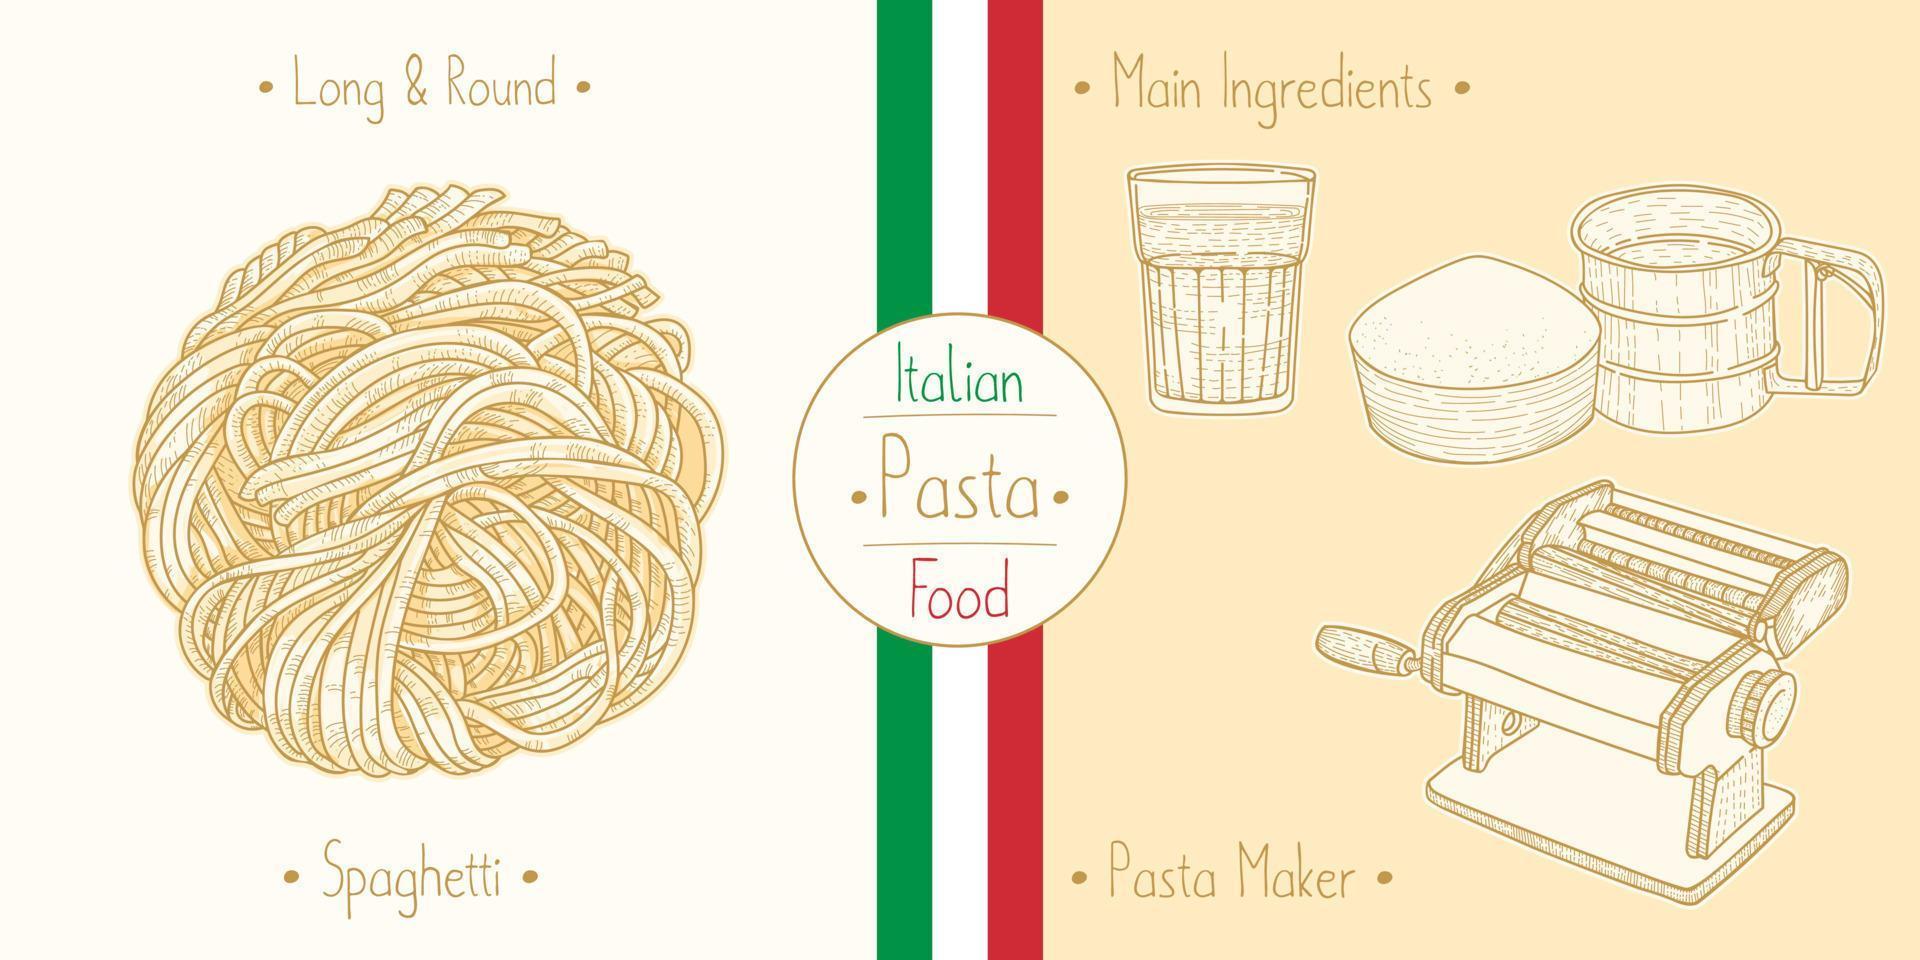 laga italiensk mat sphagetti pasta och huvudingredienser och pasta tillverkare utrustning, skissa illustration i vintage stil vektor